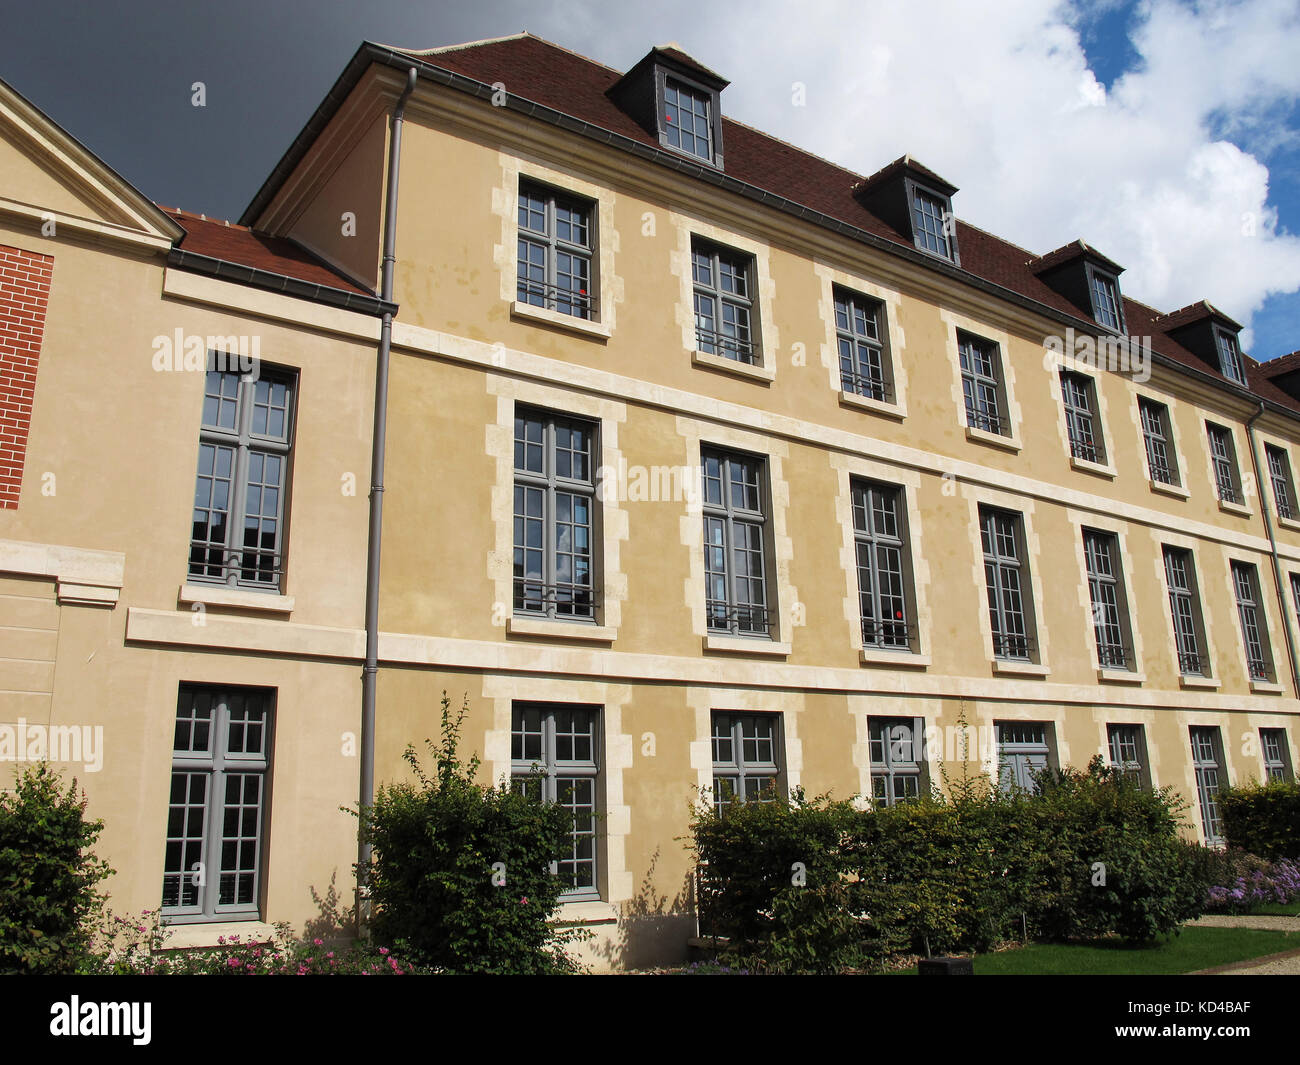 Antiguo hospital laennec, sede de kering y Balenciaga, París, Francia,  Europa Fotografía de stock - Alamy